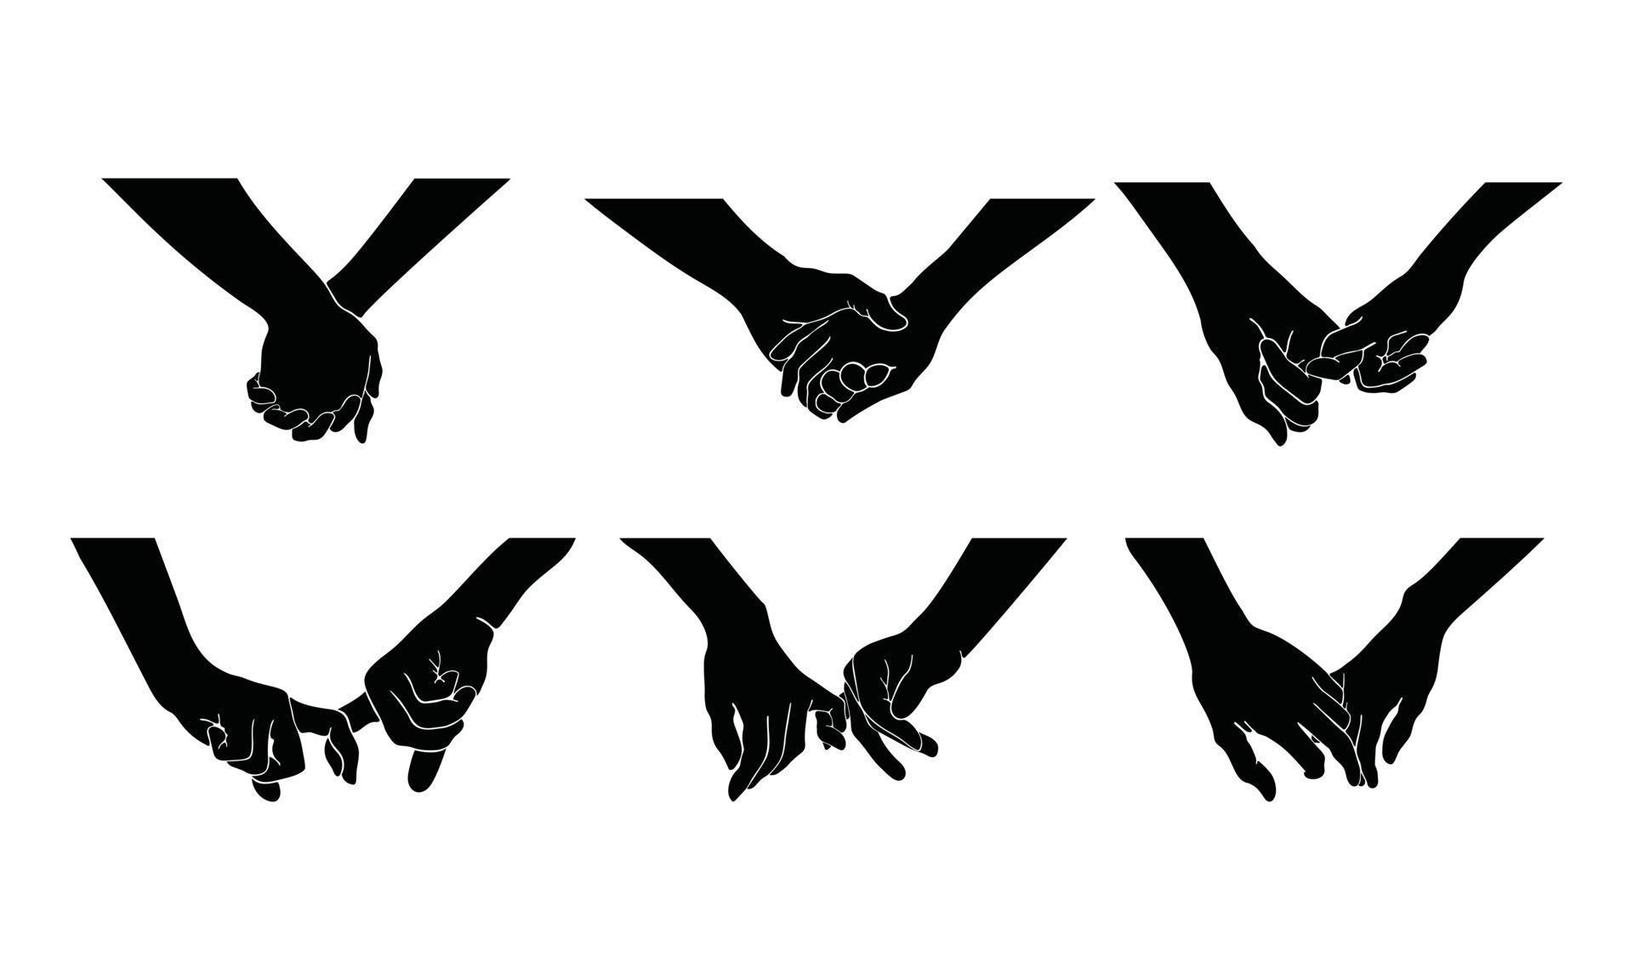 Hände eines Paares halten sich, was die Zusammengehörigkeit und Zuneigung bedeutet. eine Silhouettenillustration der Handbeziehung in einer einfachen Zeichnung. vektor